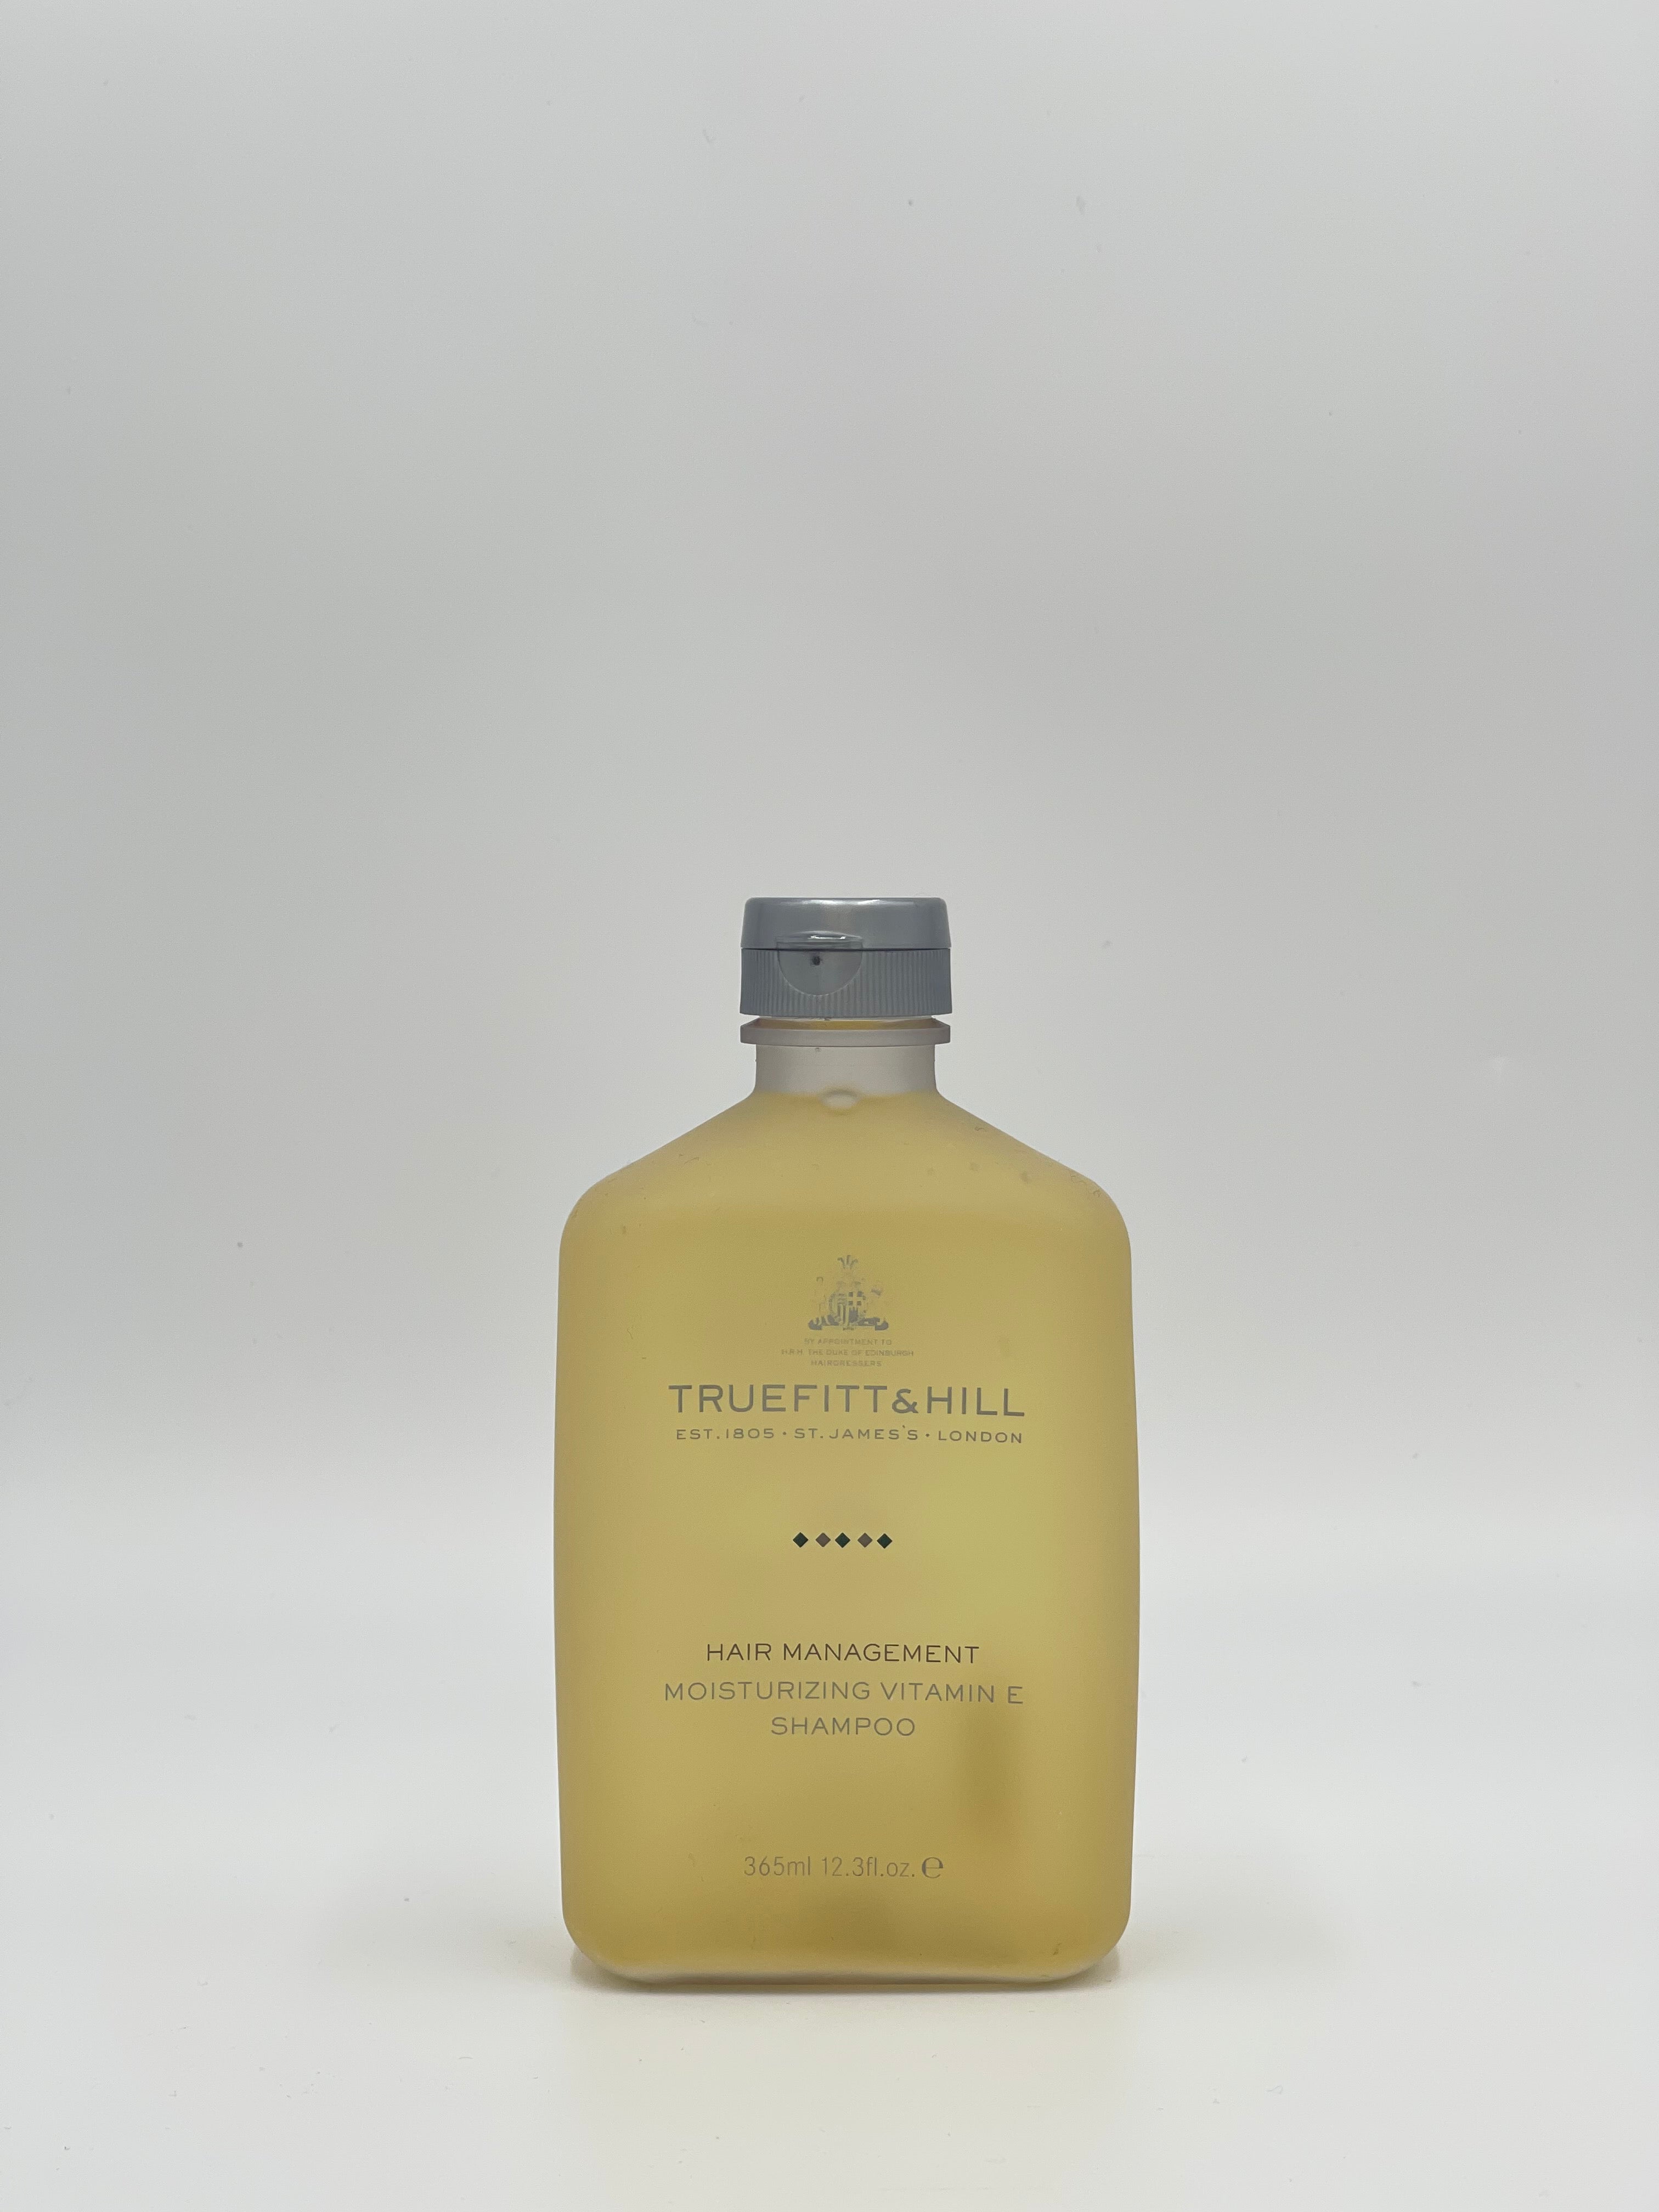 Truefitt&hill Moisturizing Vitamin E Shampoo 365ml